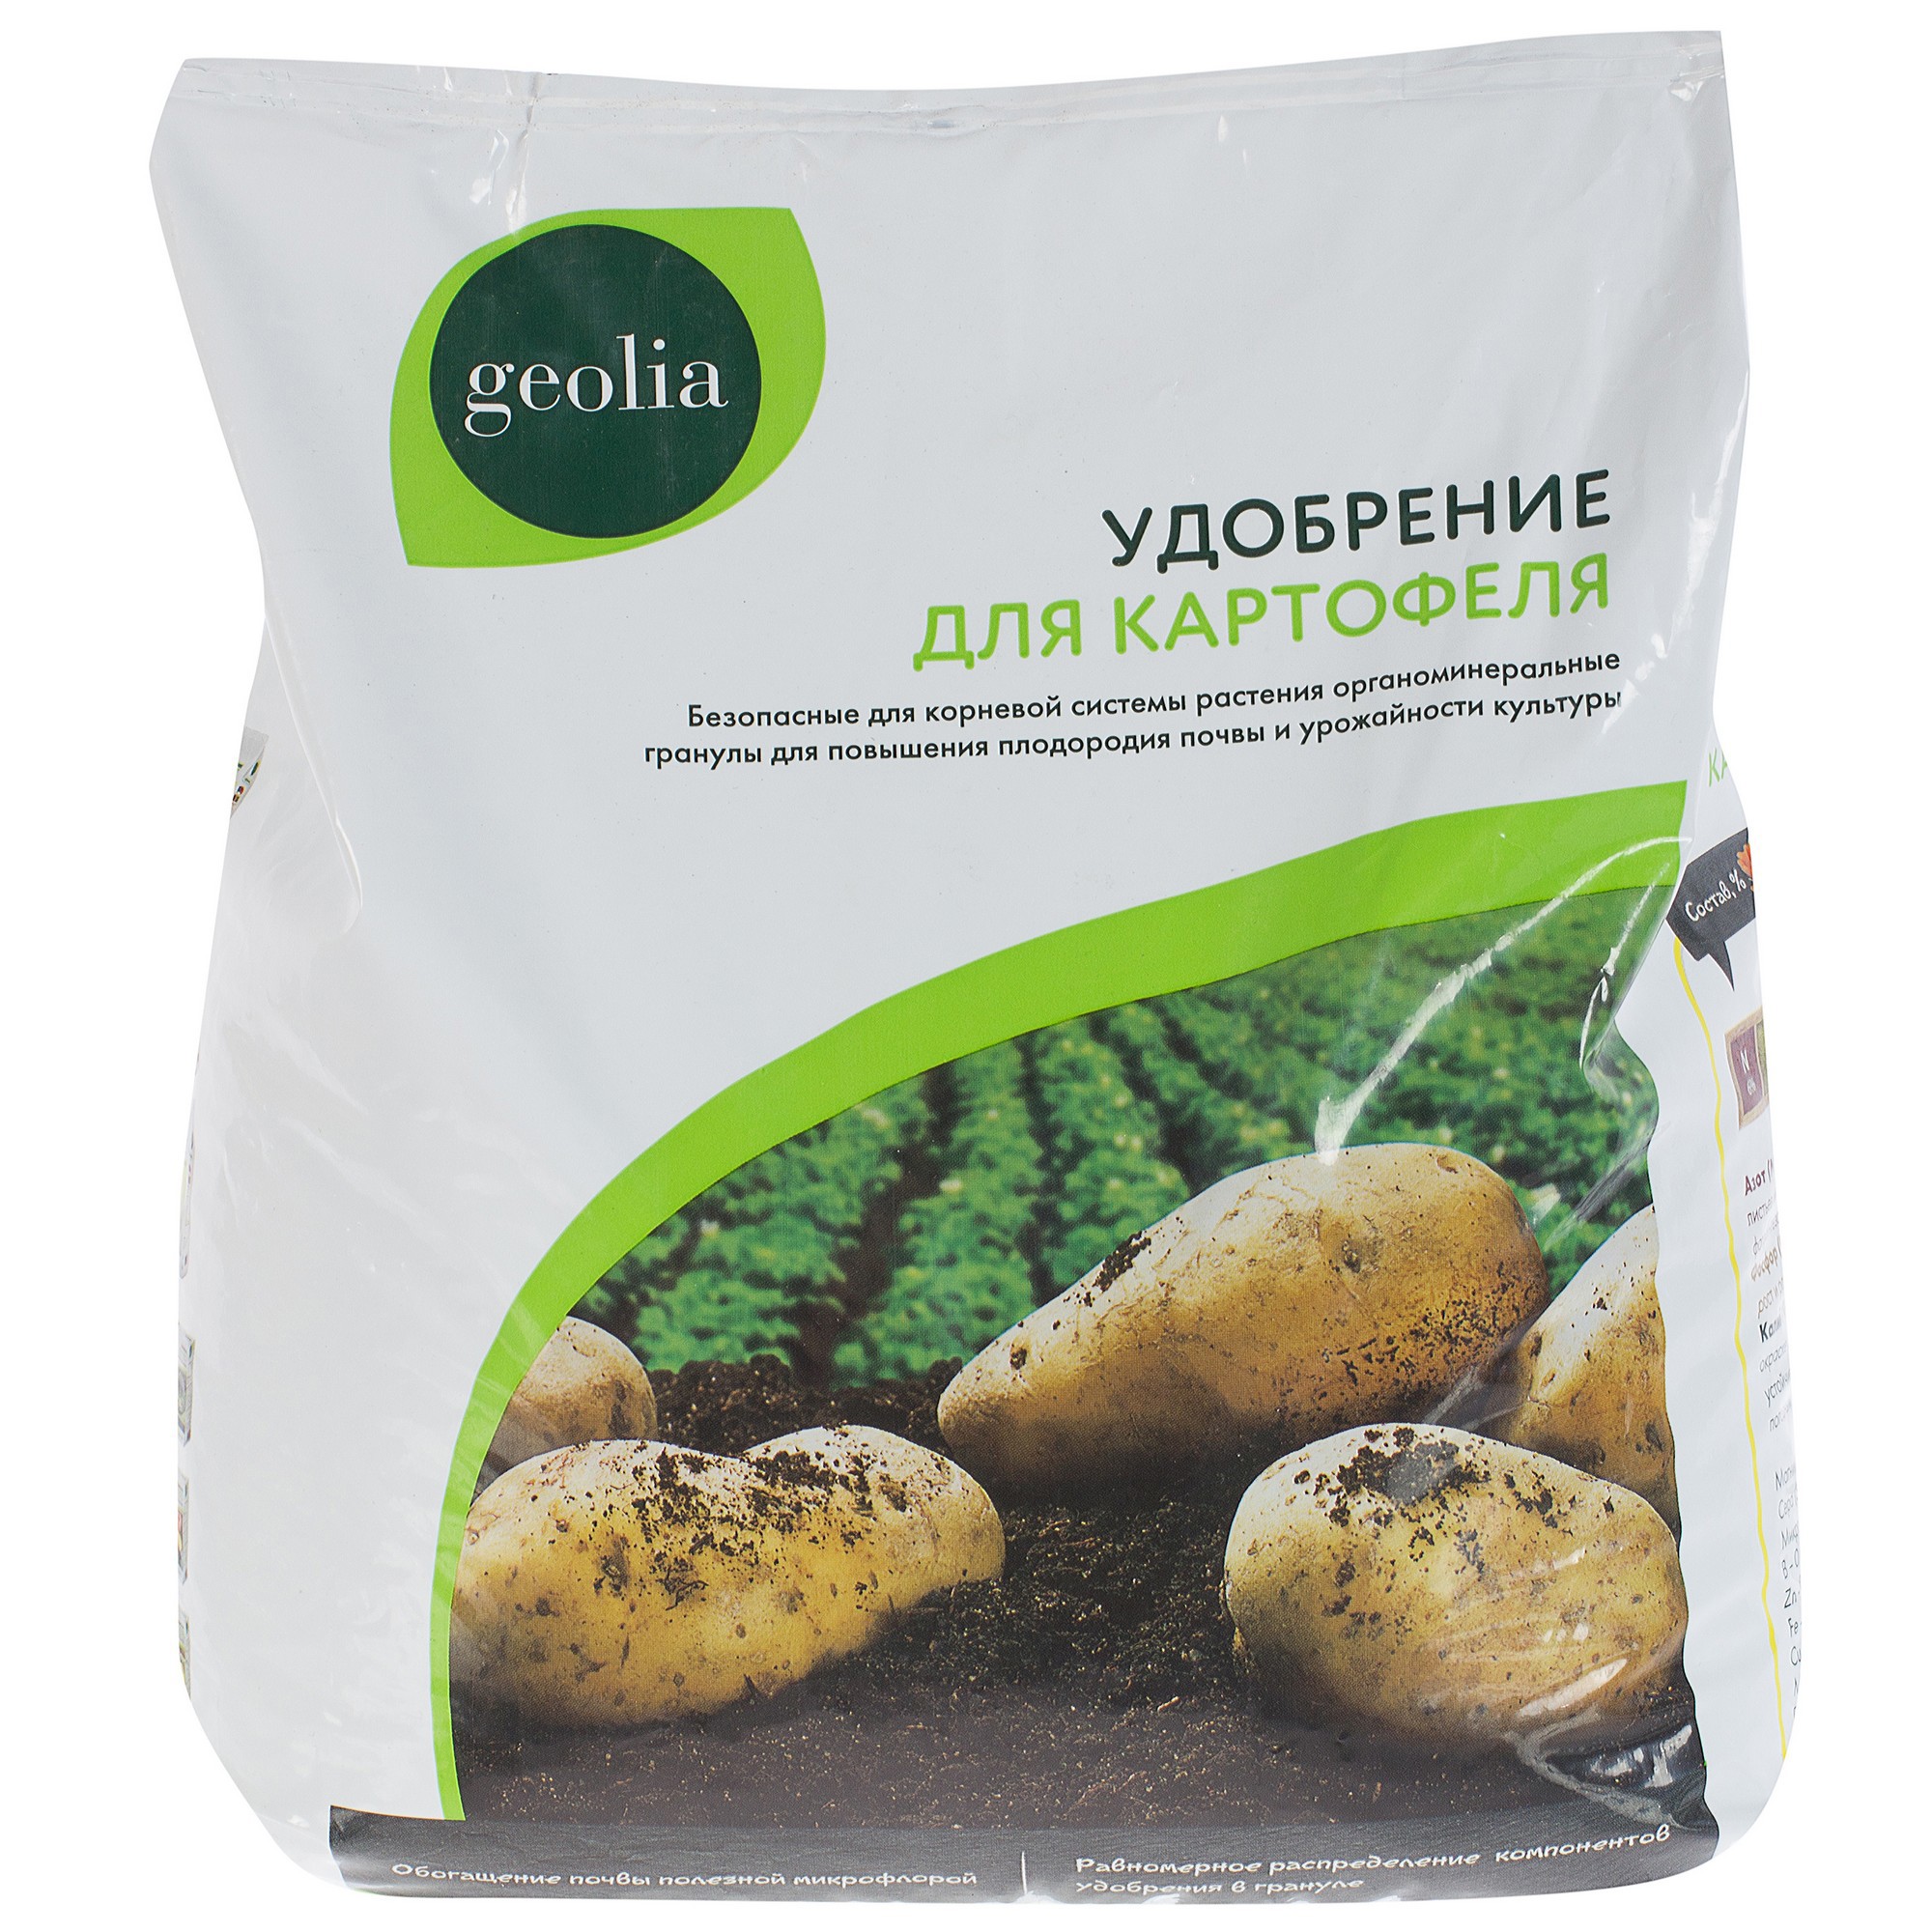 18610860 Удобрение органоминеральное для картофеля 5 кг STLM-0011695 GEOLIA